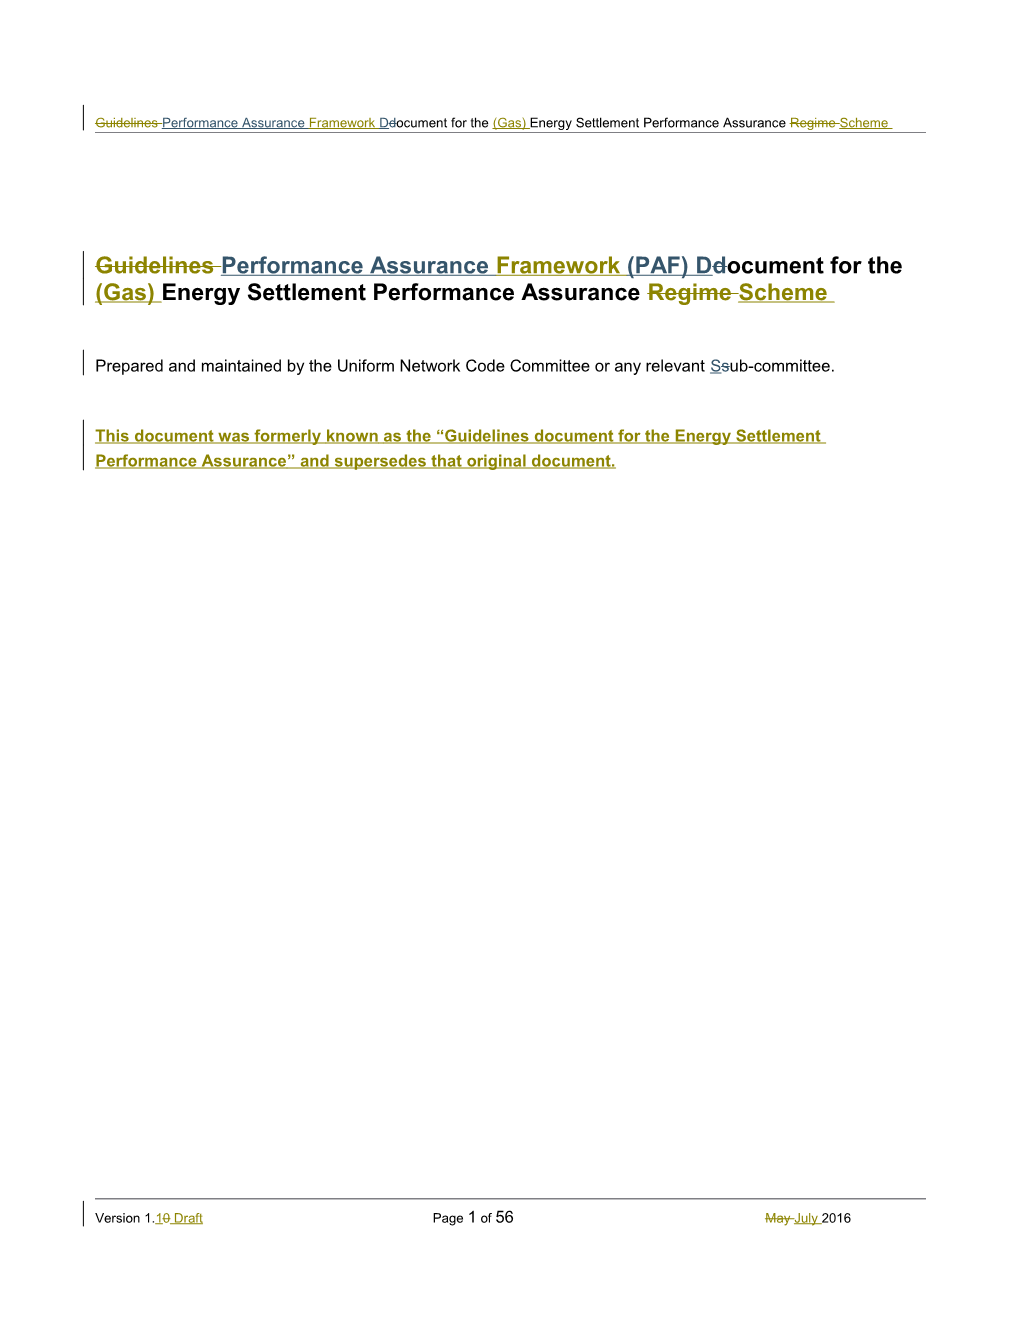 Guidelines Performance Assurance Framework Ddocument for the (Gas) Energy Settlement Performance